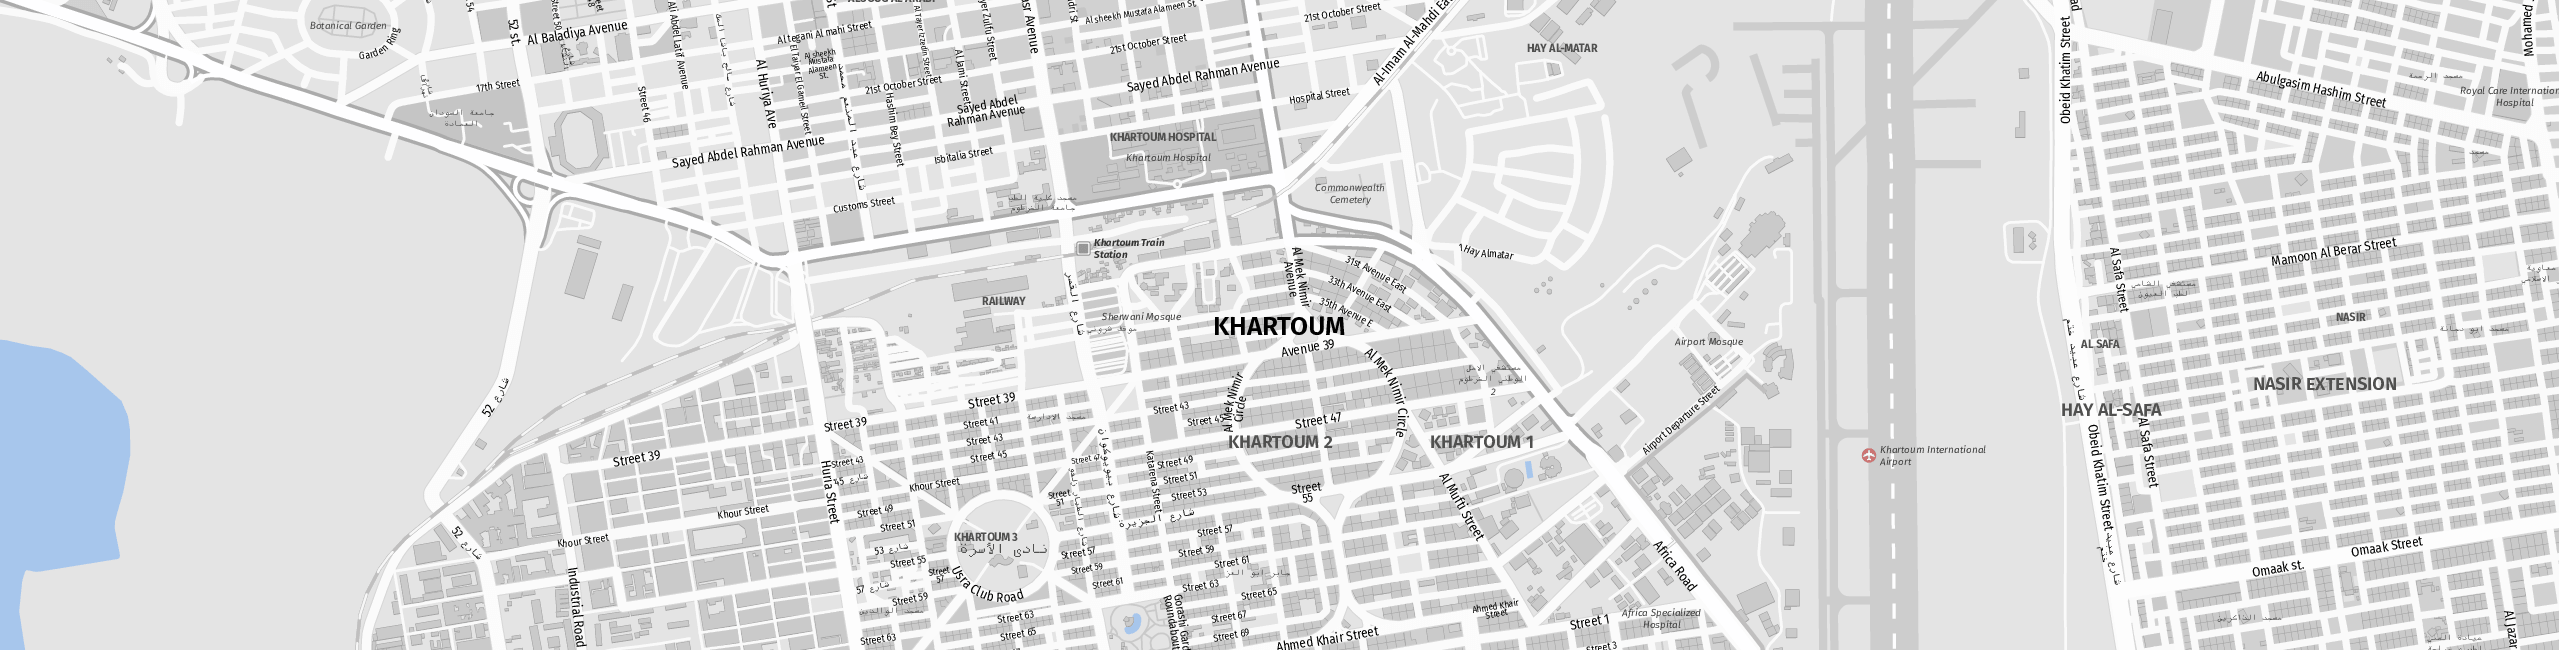 Stadtplan Khartum zum Downloaden.